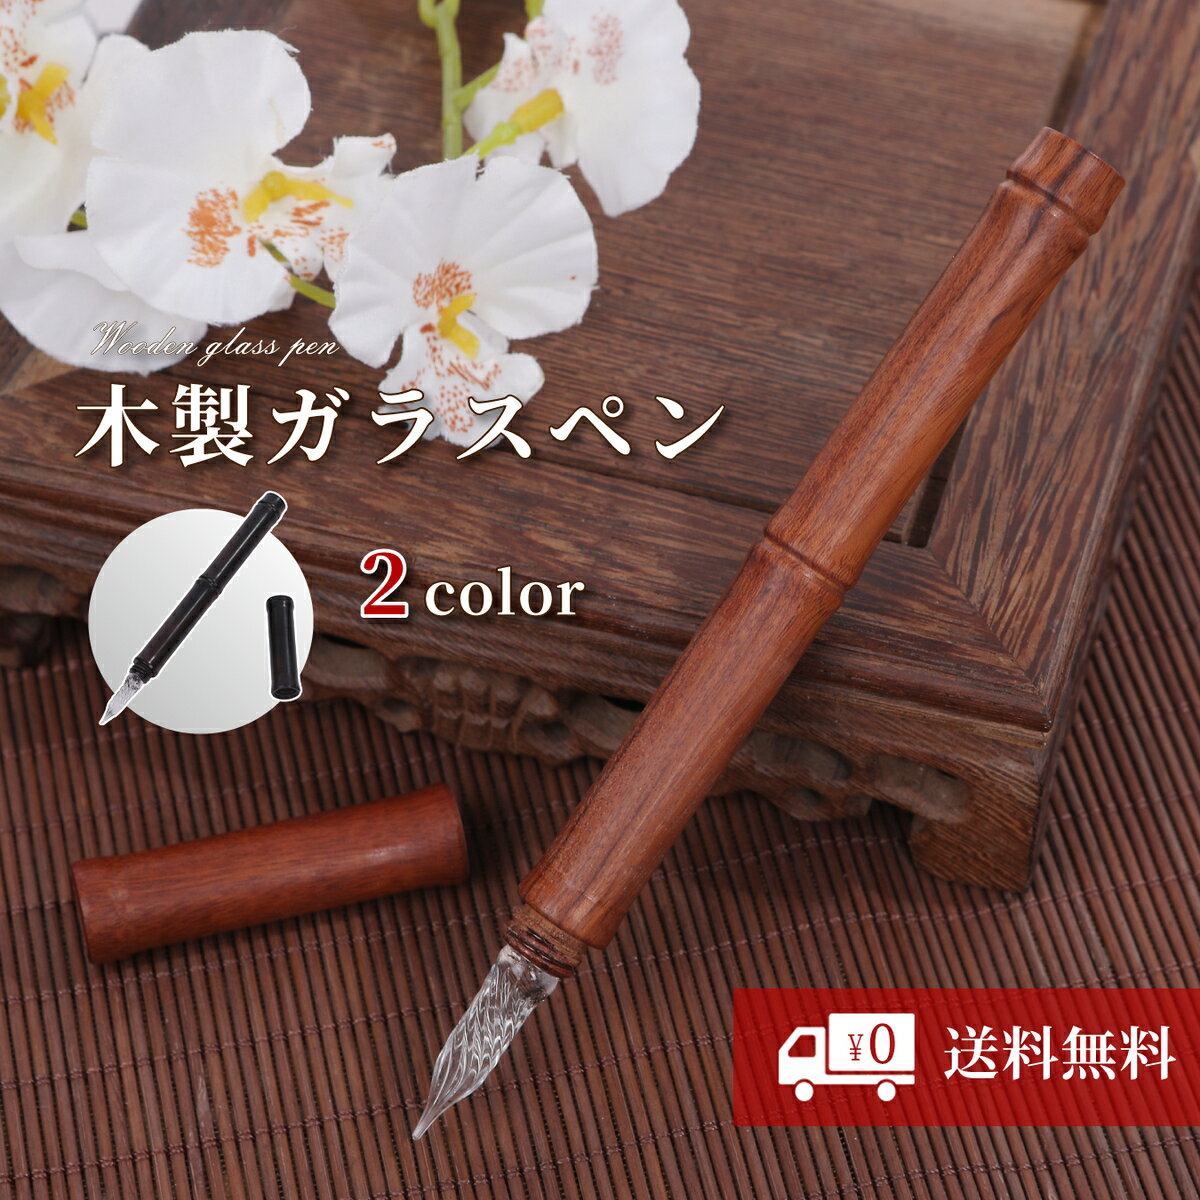 【tegning】 【2本セット】【濃茶×薄茶】ガラスペン 木 木製 ペン 万年筆 高級